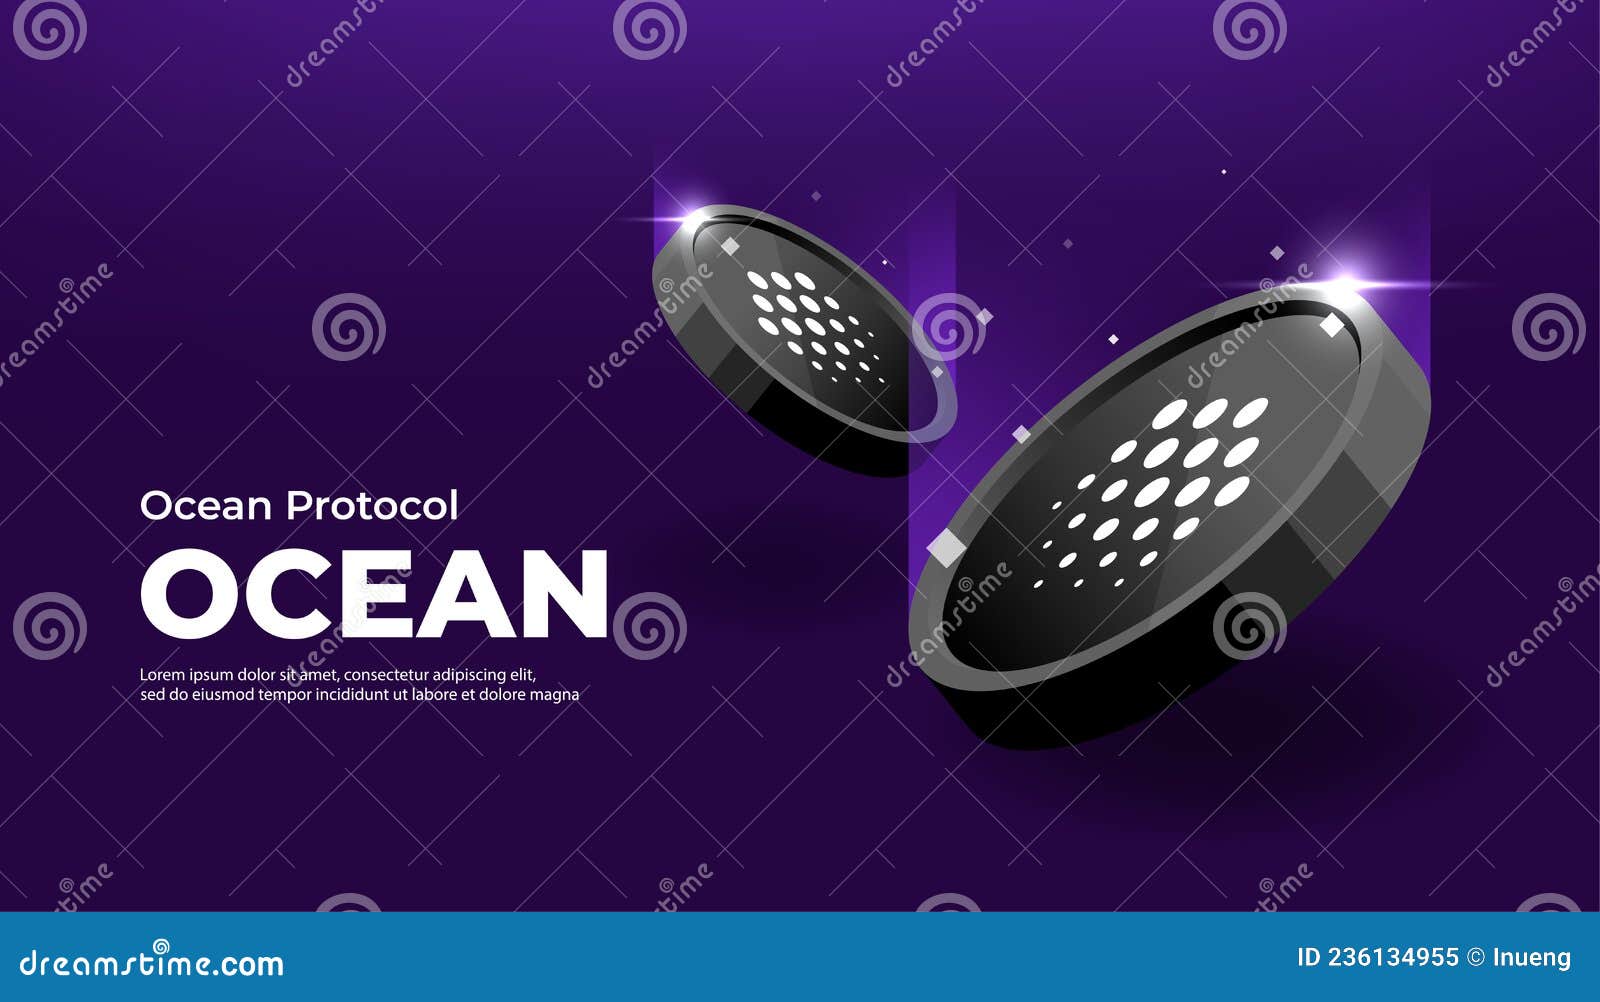 Ocean Protocol Data Exchange Protocol | Moonbeam Network